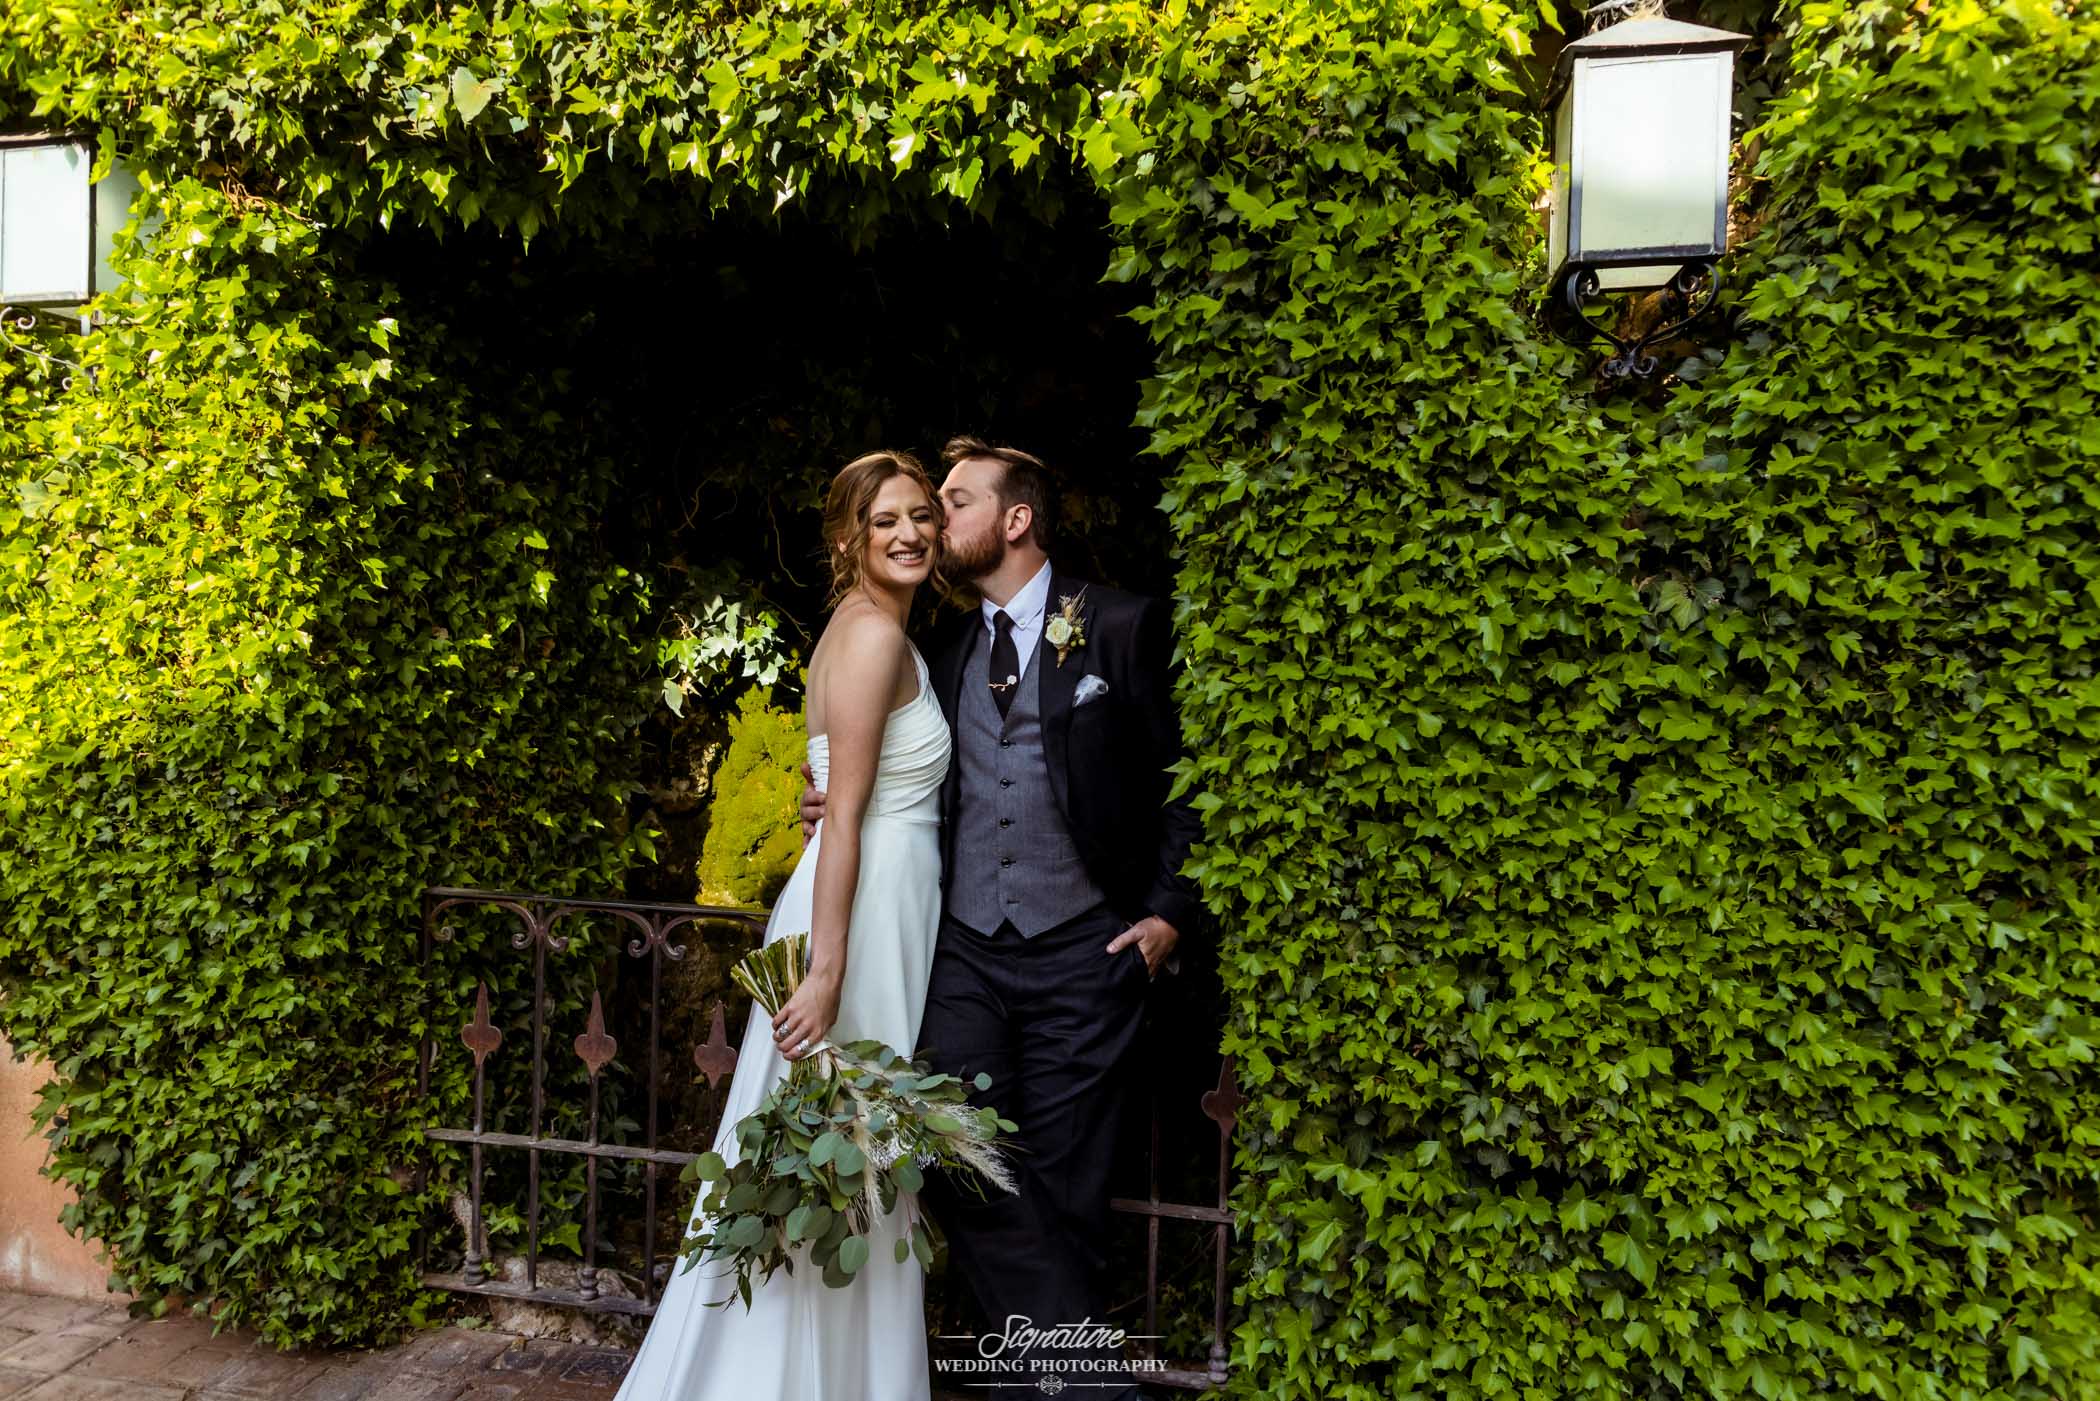 Groom kissing bride on cheek in vine archway